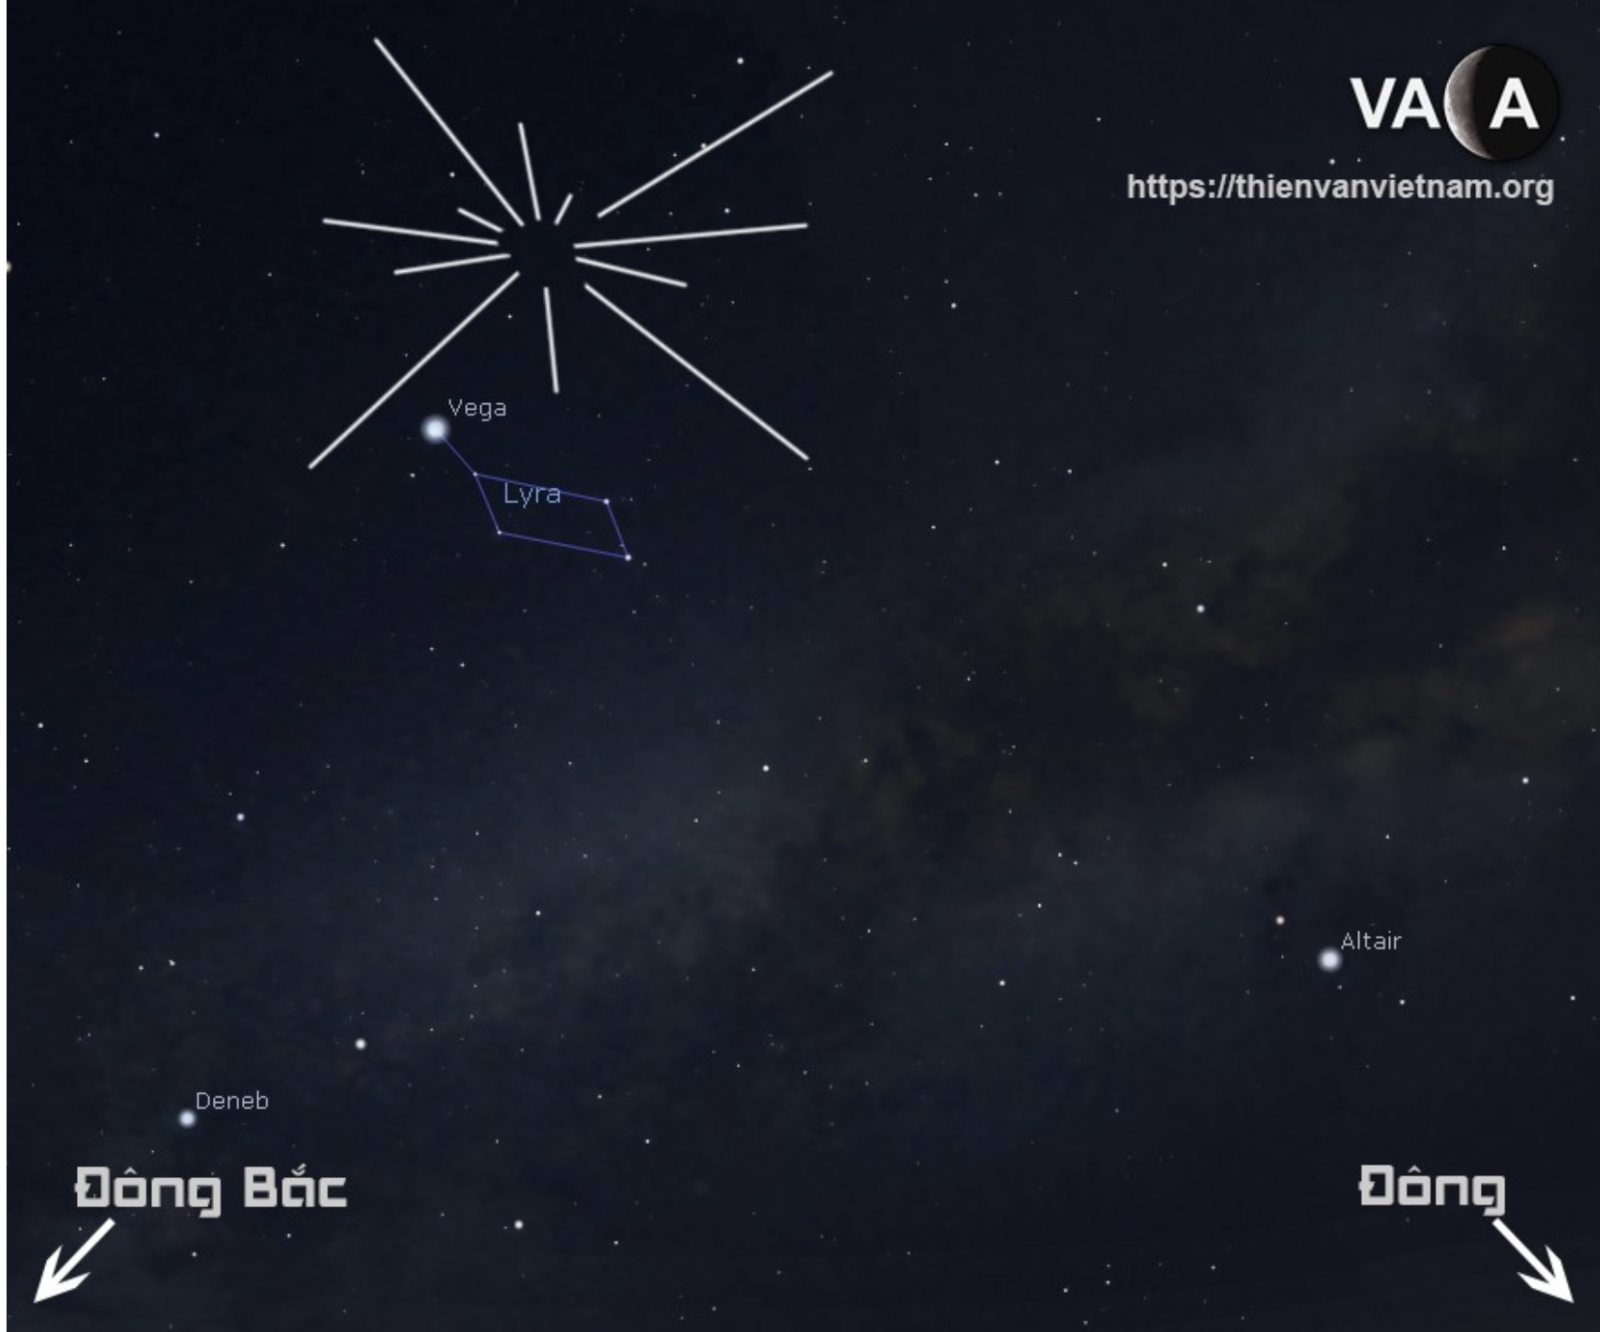 Chúng ta có thể quan sát hiện tượng này bằng mắt thường và nhận biết chòm sao Lyra bằng cách tìm 3 ngôi sao sáng nhất bầu trời phía đông. Ảnh VACA